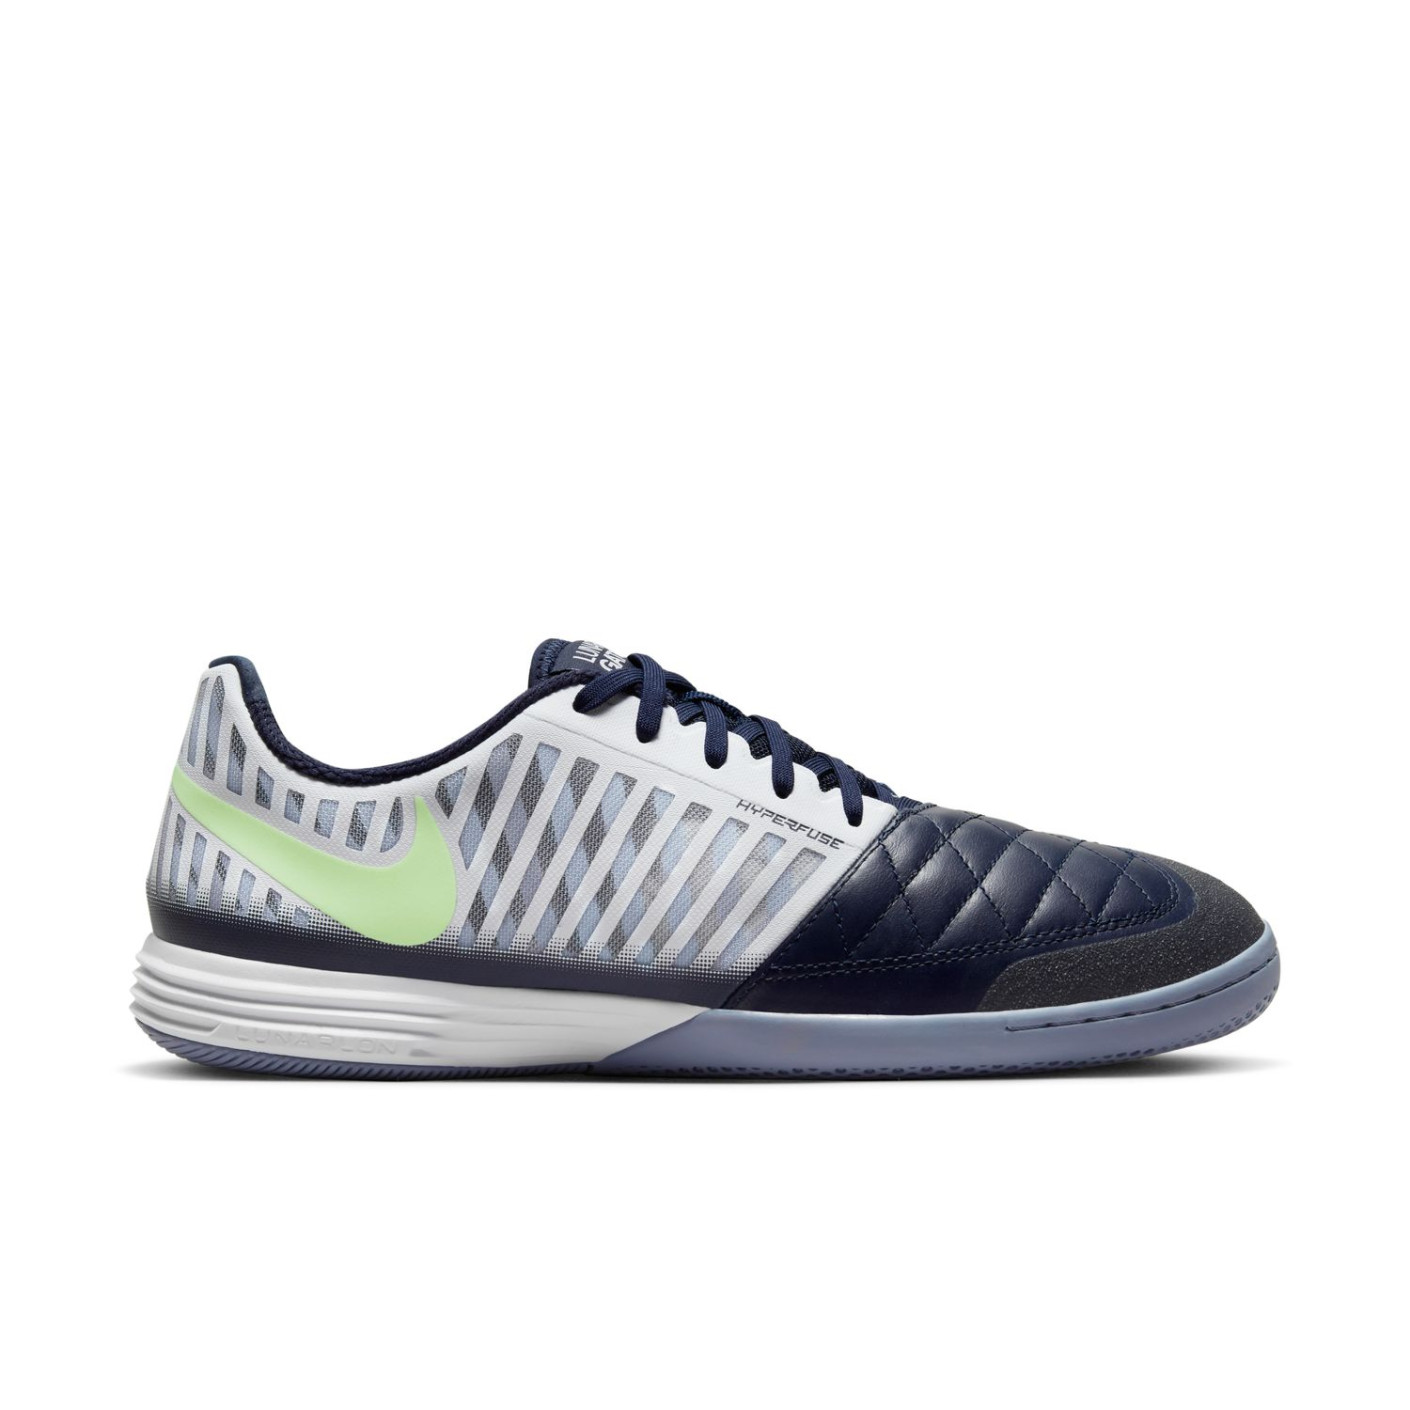 Nike Lunargato II Chaussures de Foot en Salle (IN) Bleu Foncé Argenté Vert Clair